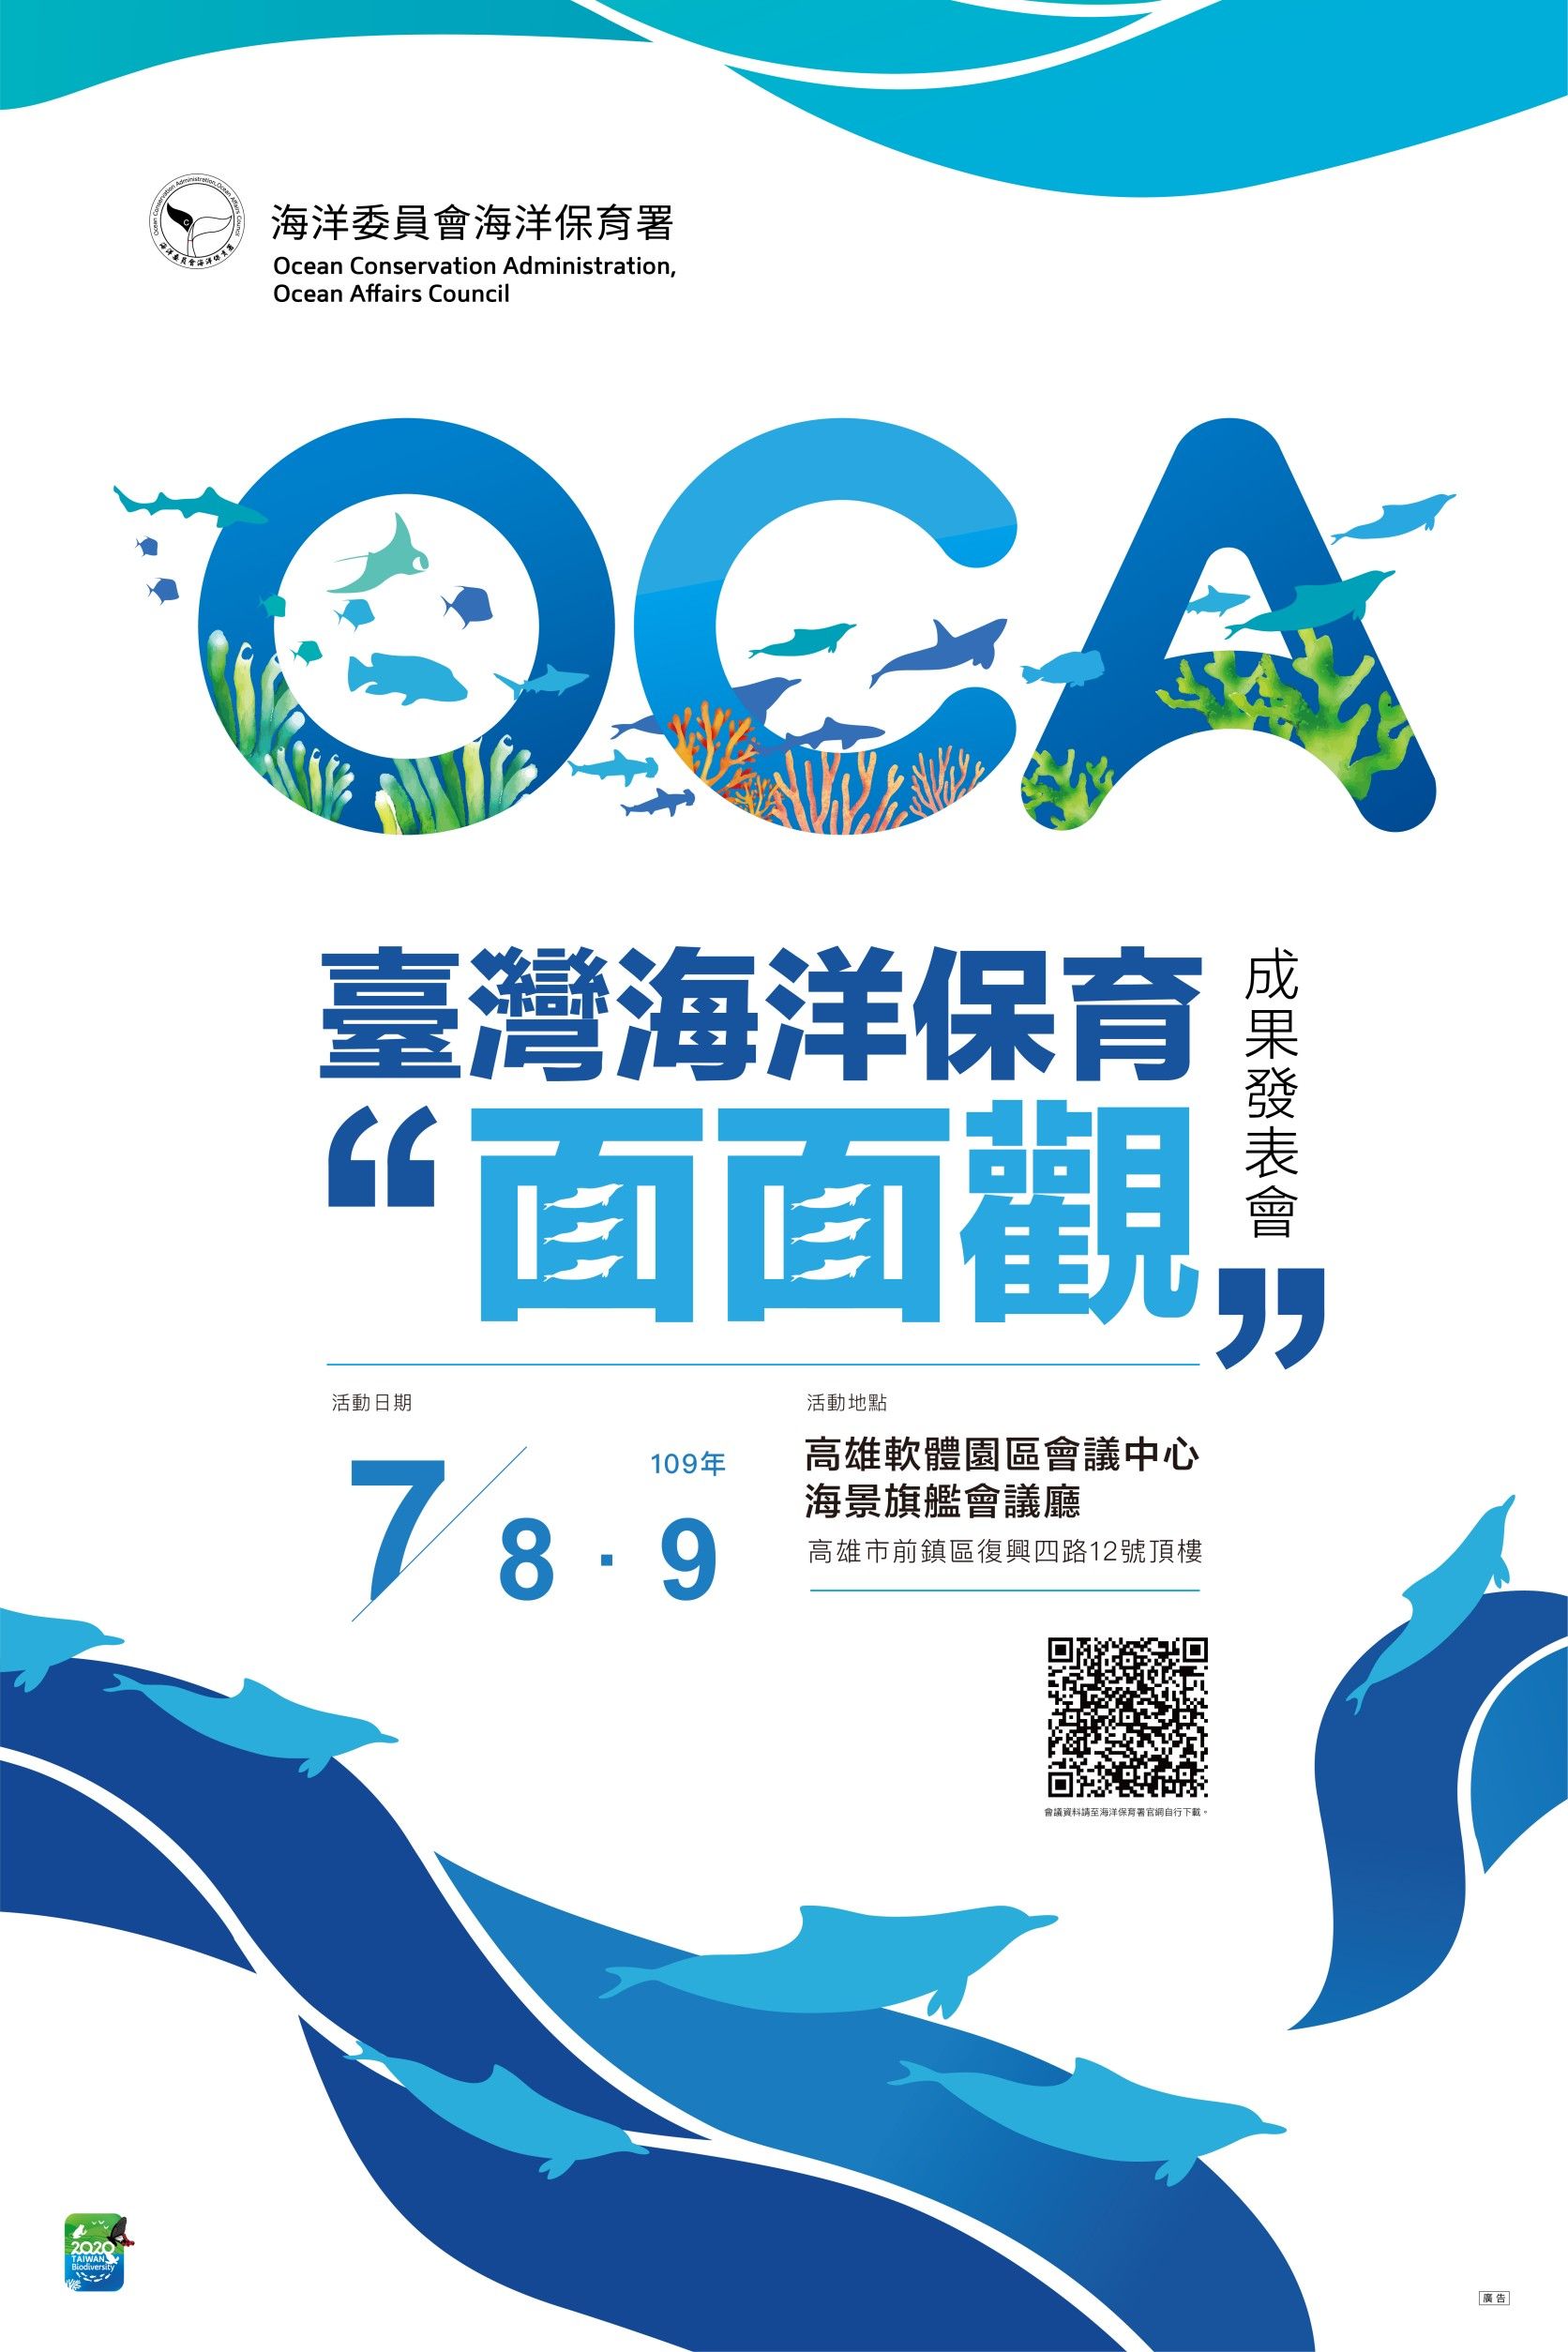 海洋保育署「臺灣海洋保育面面觀」成果發表會